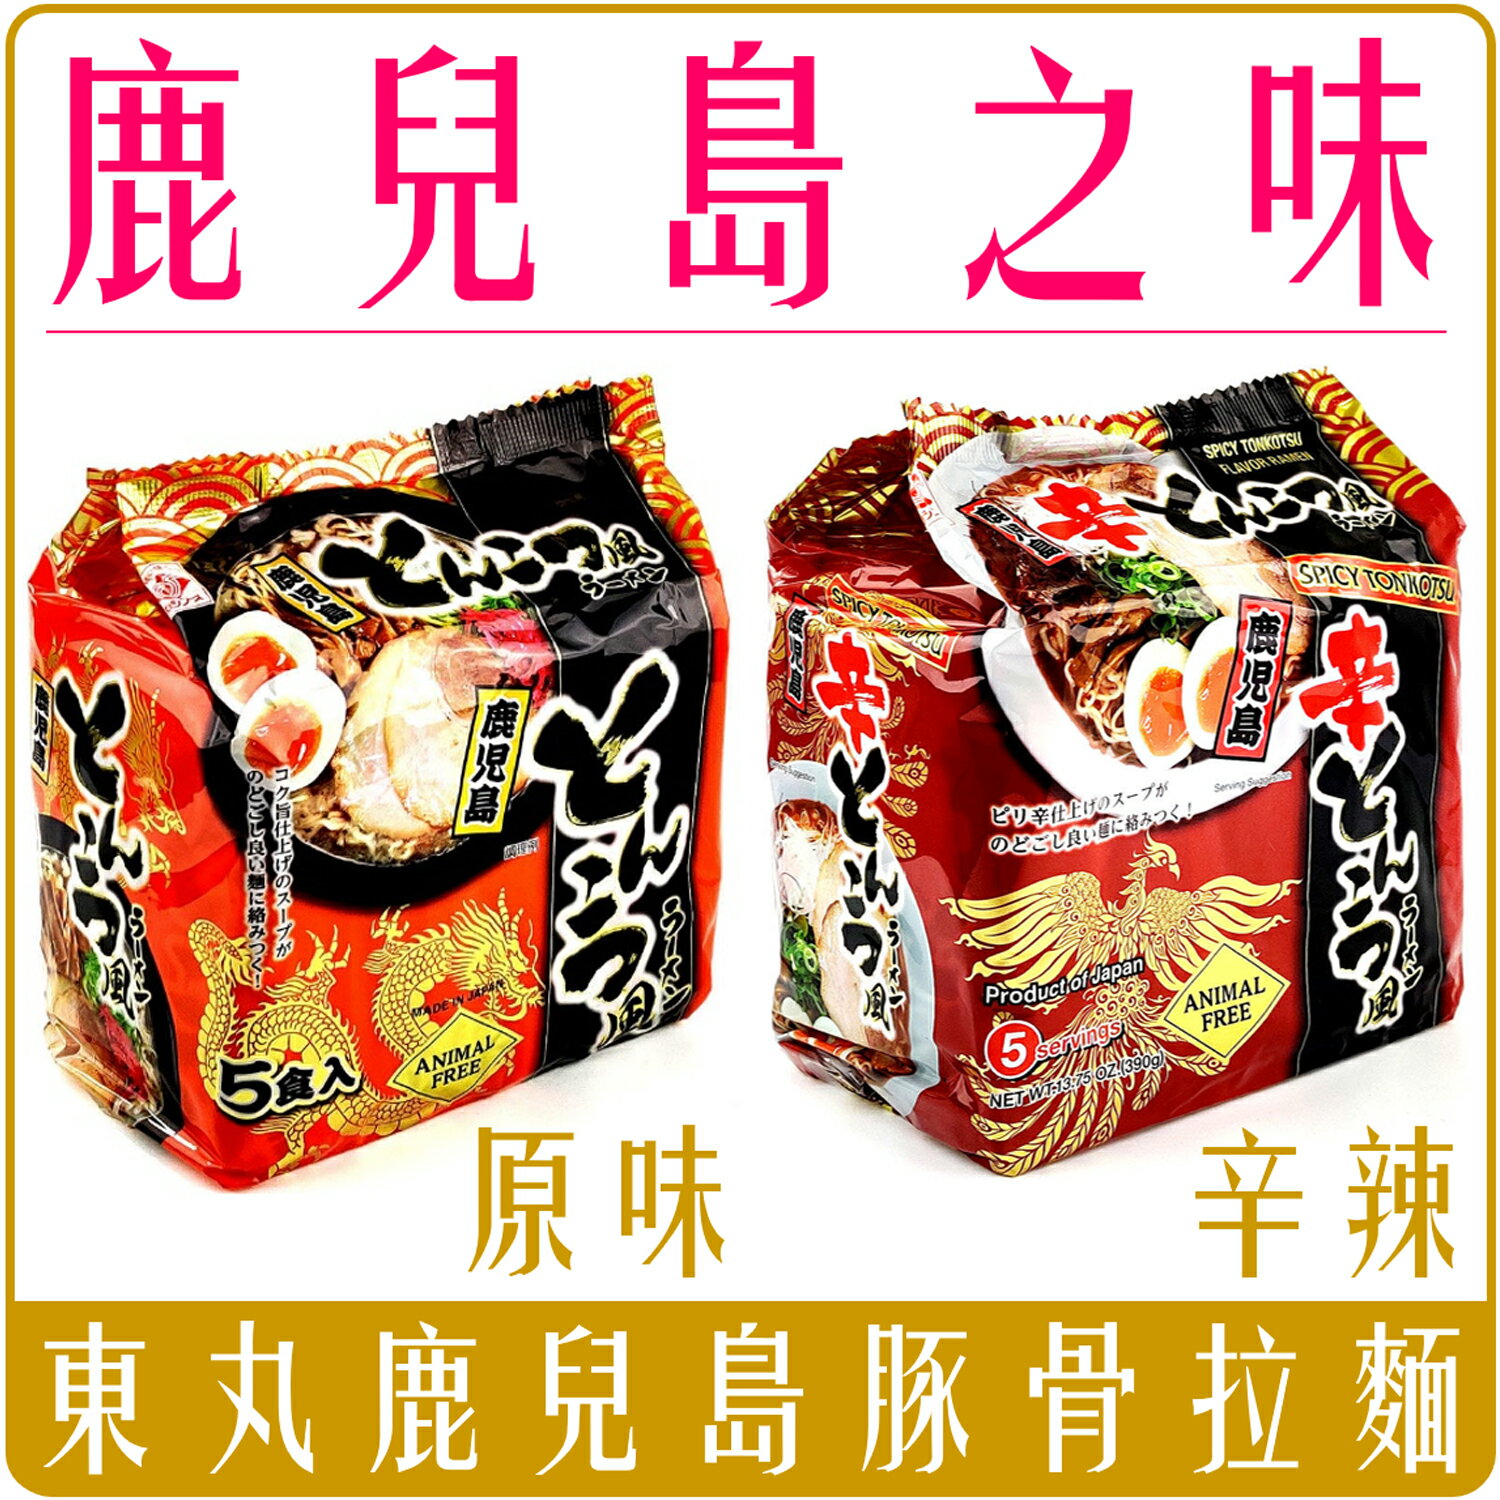 《 Chara 微百貨 》 日本 東丸 鹿兒島 拉麵 豚骨 醬油 團購 批發